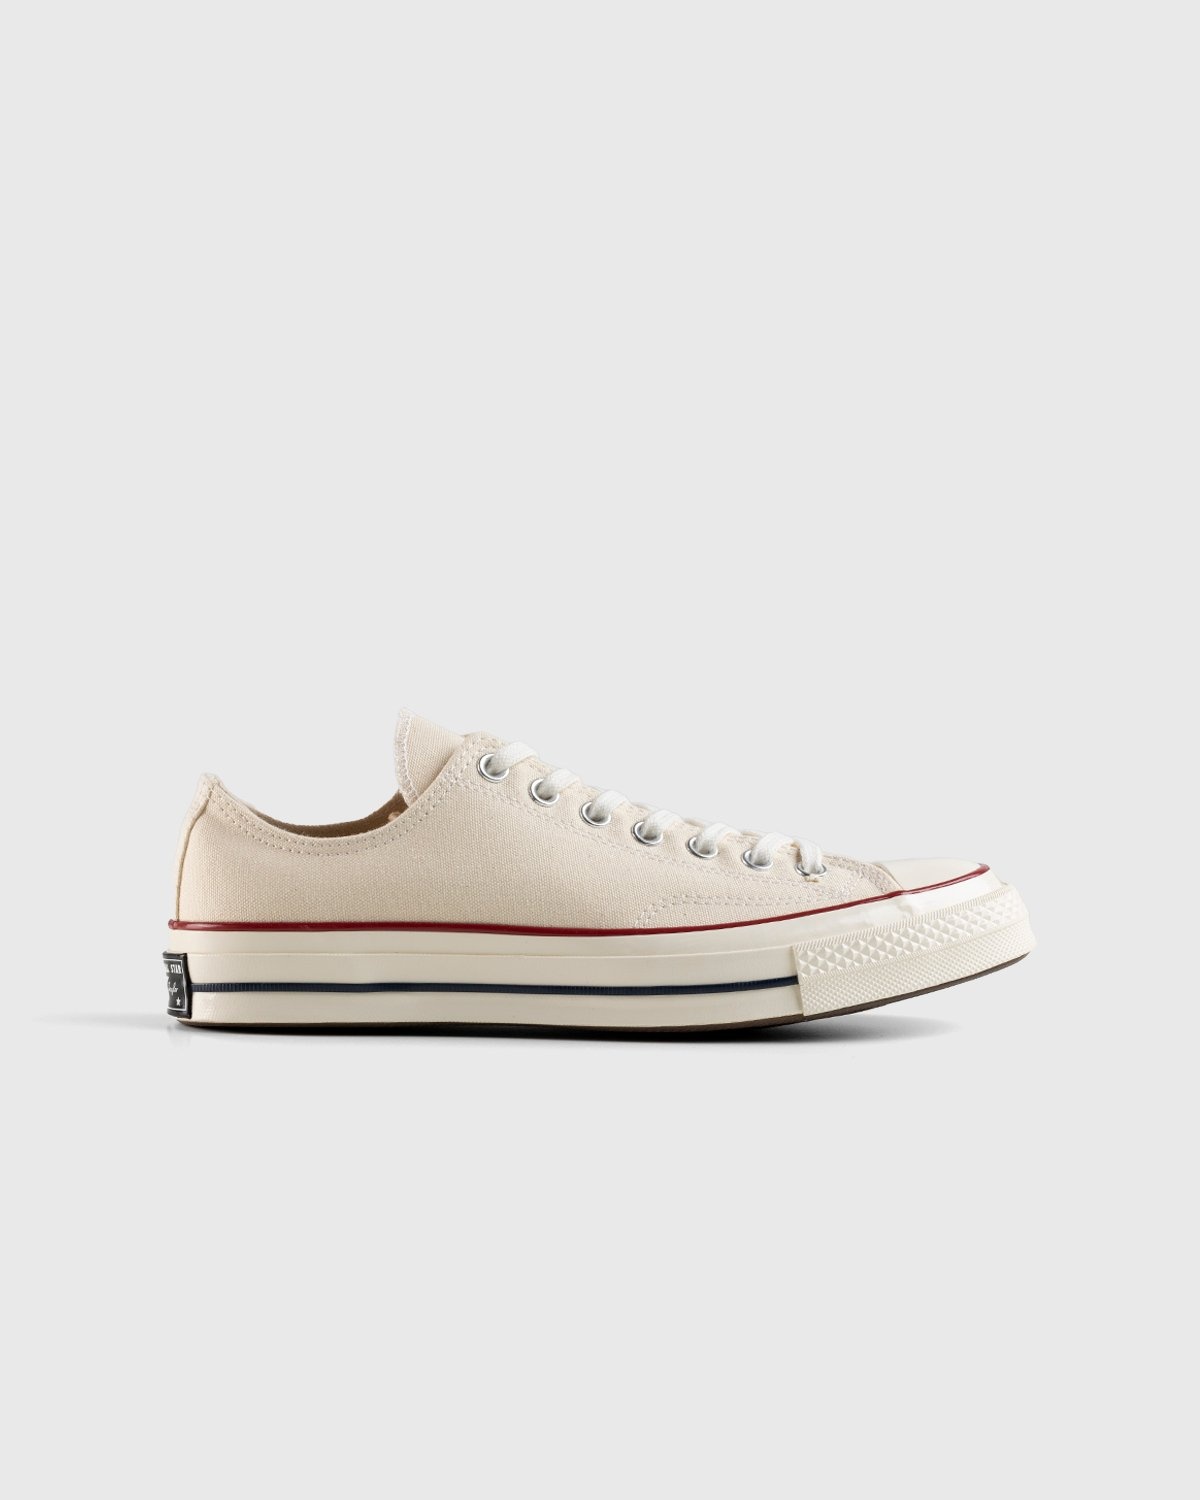 Converse – Chuck 70 Ox Parchment/Garnet/Egret - Low Top Sneakers - Beige - Image 1